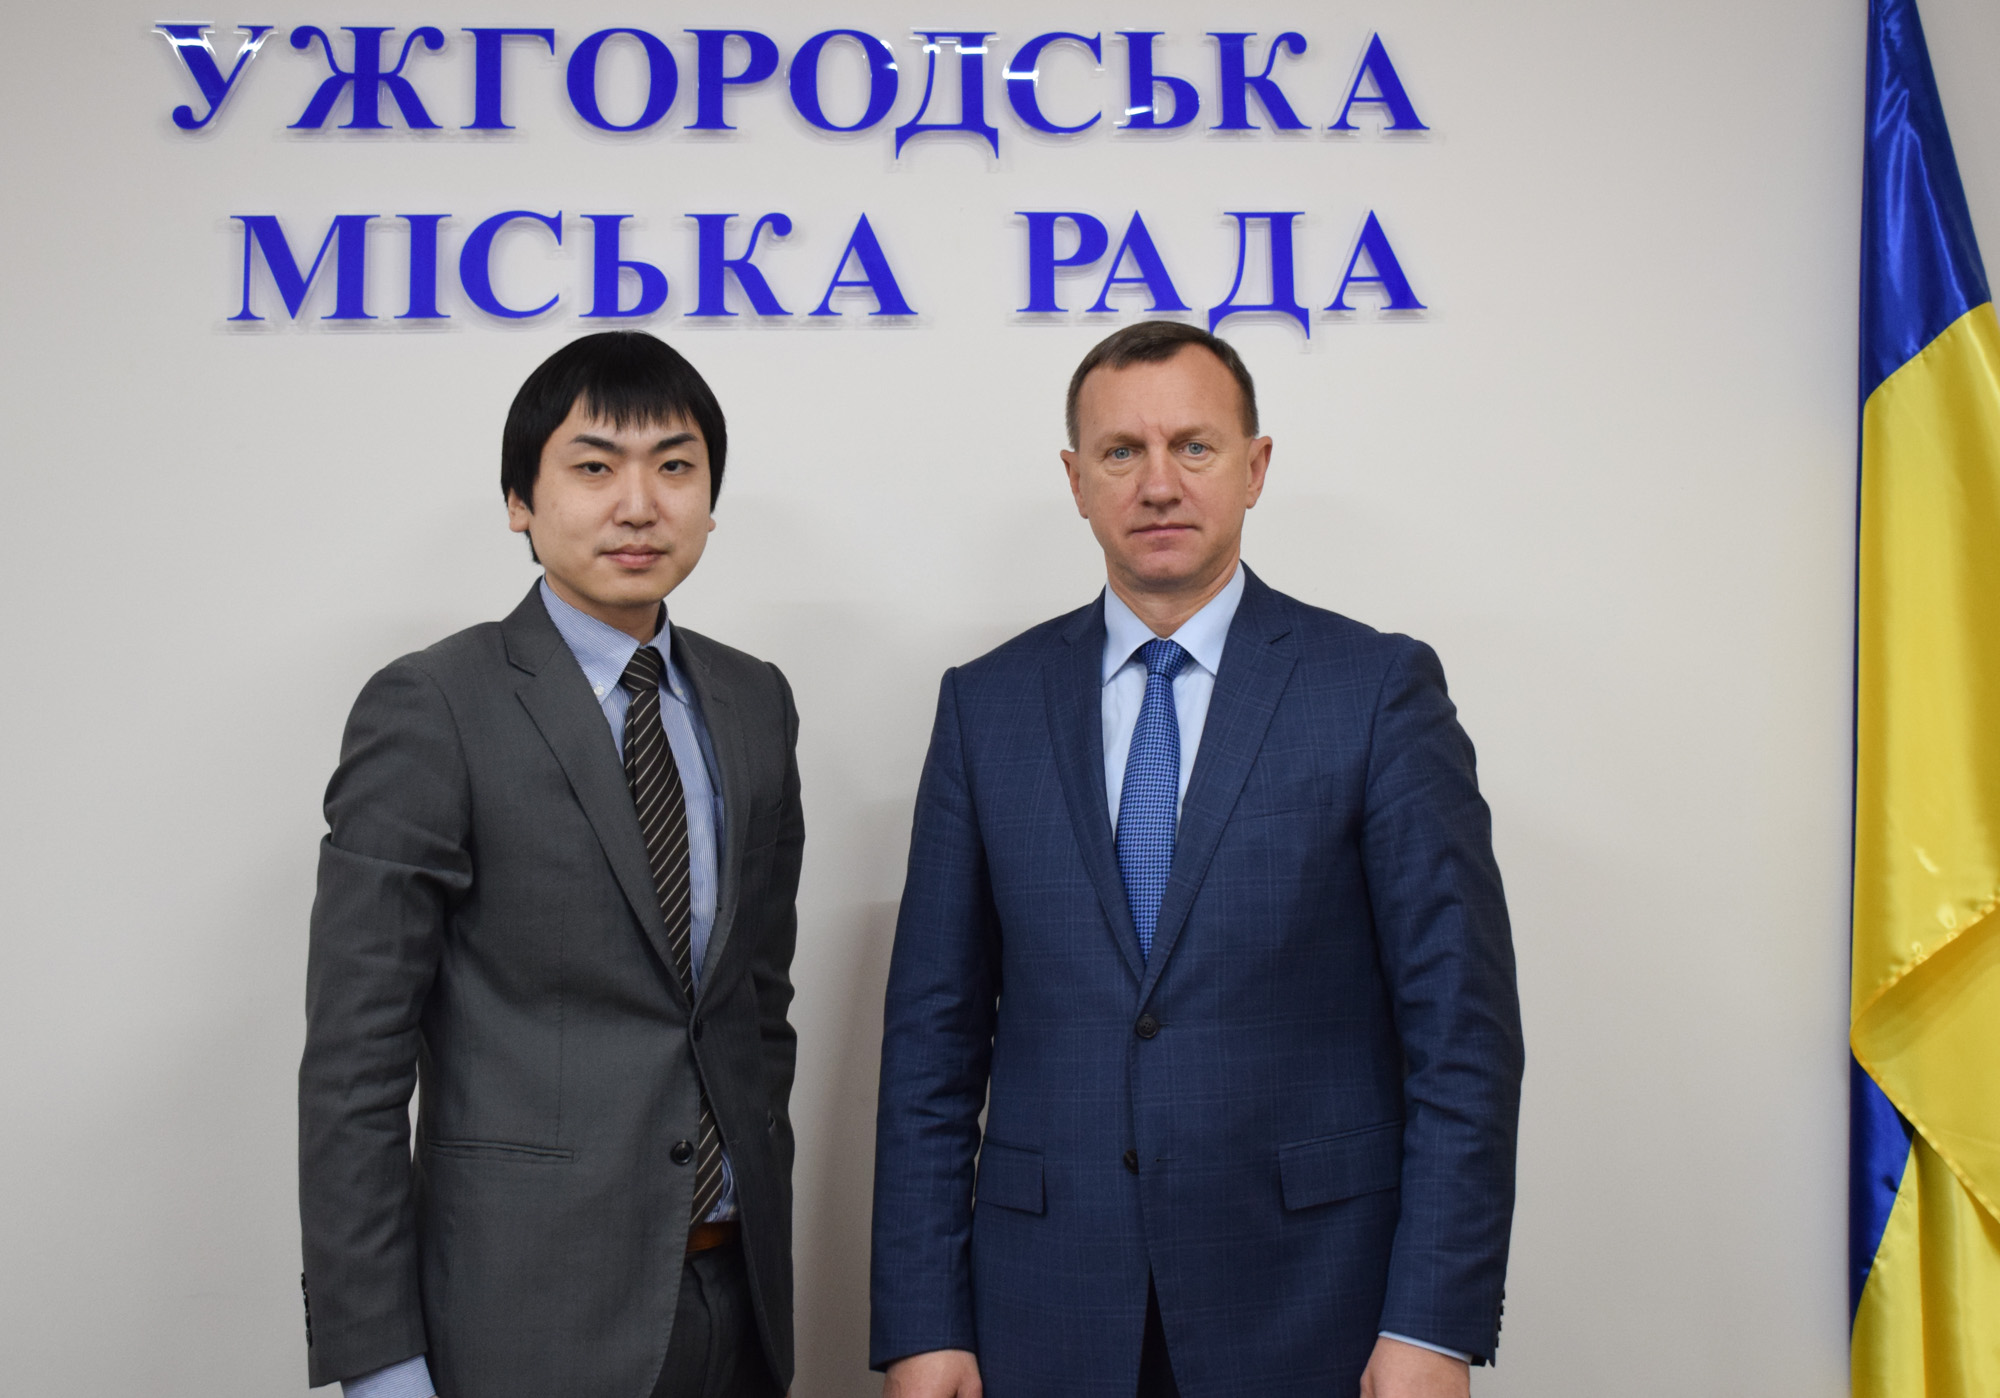 Ужгородський міський голова зустрівся з першим секретарем Посольства Японії в Україні Ацуші Вакуі